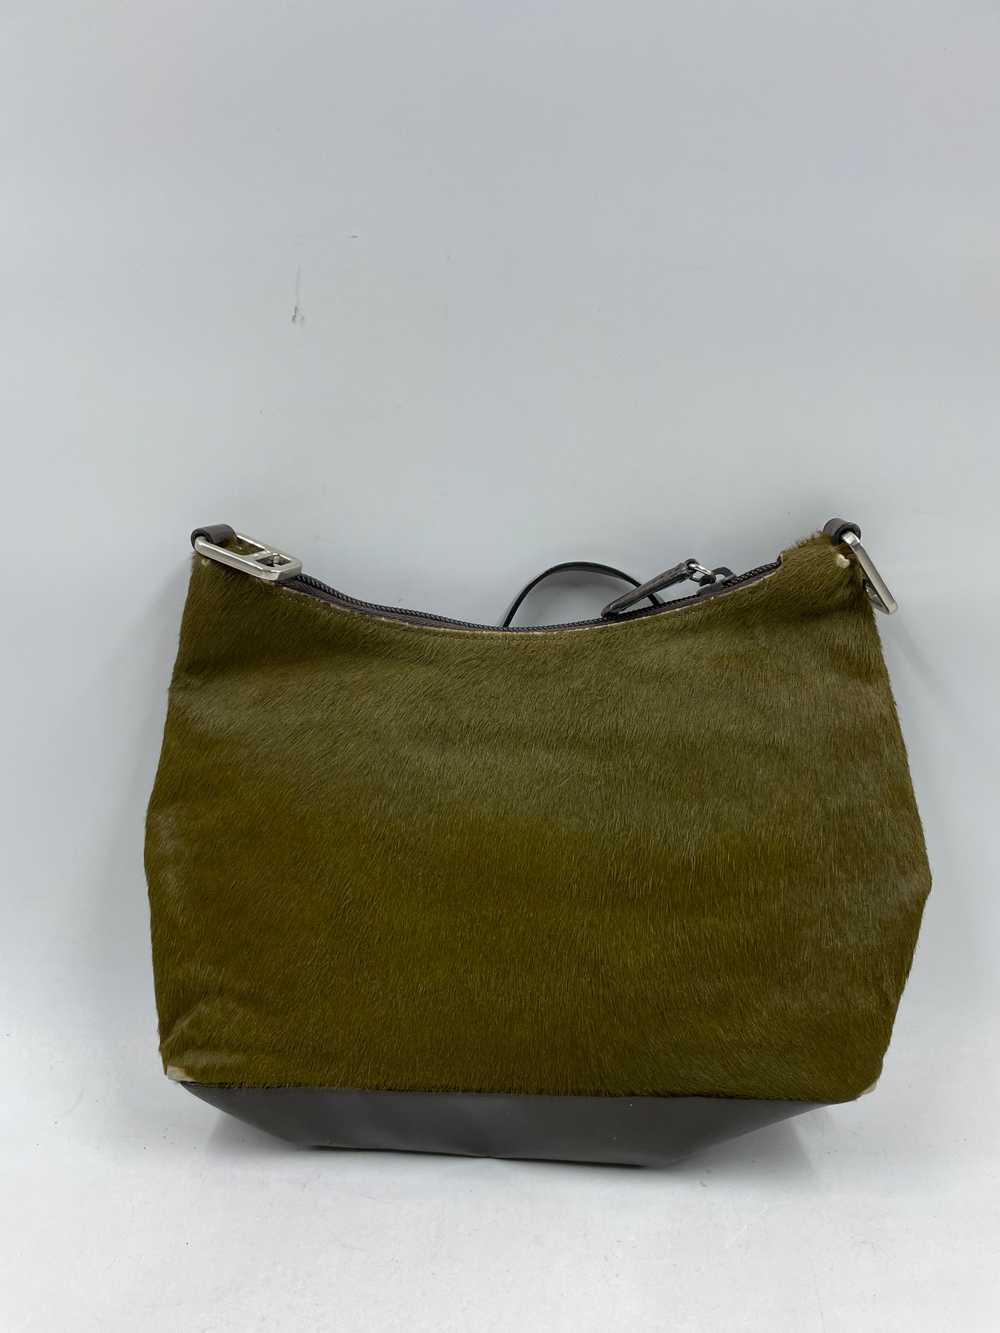 Authentic Prada Calf Hair Green Shoulder Bag - image 2